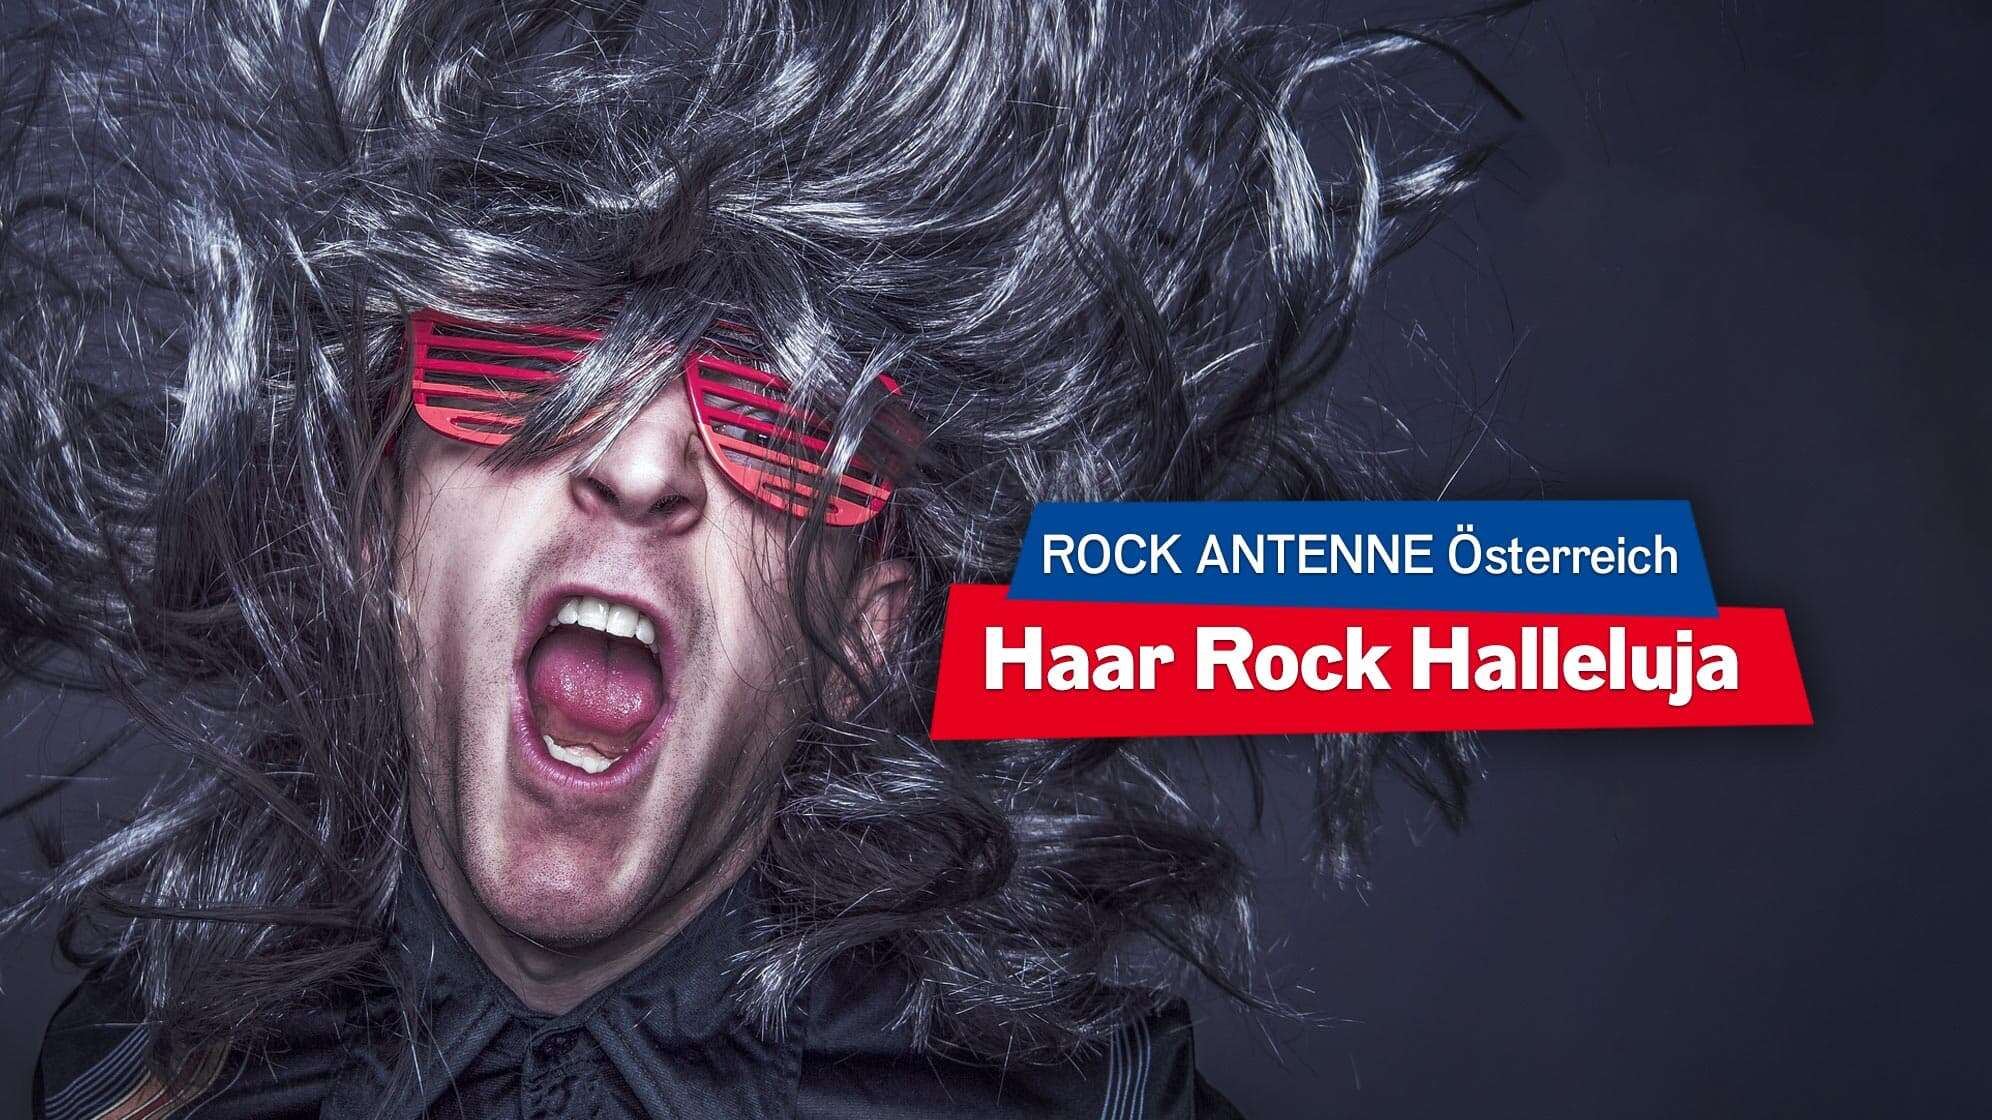 Bild eines Mannes mit grauer, wallender Perücke, der Headbangt und eine Sonnenbrille trägt; Text: "ROCK ANTENNE Österreich Haar Rock Halleluja"